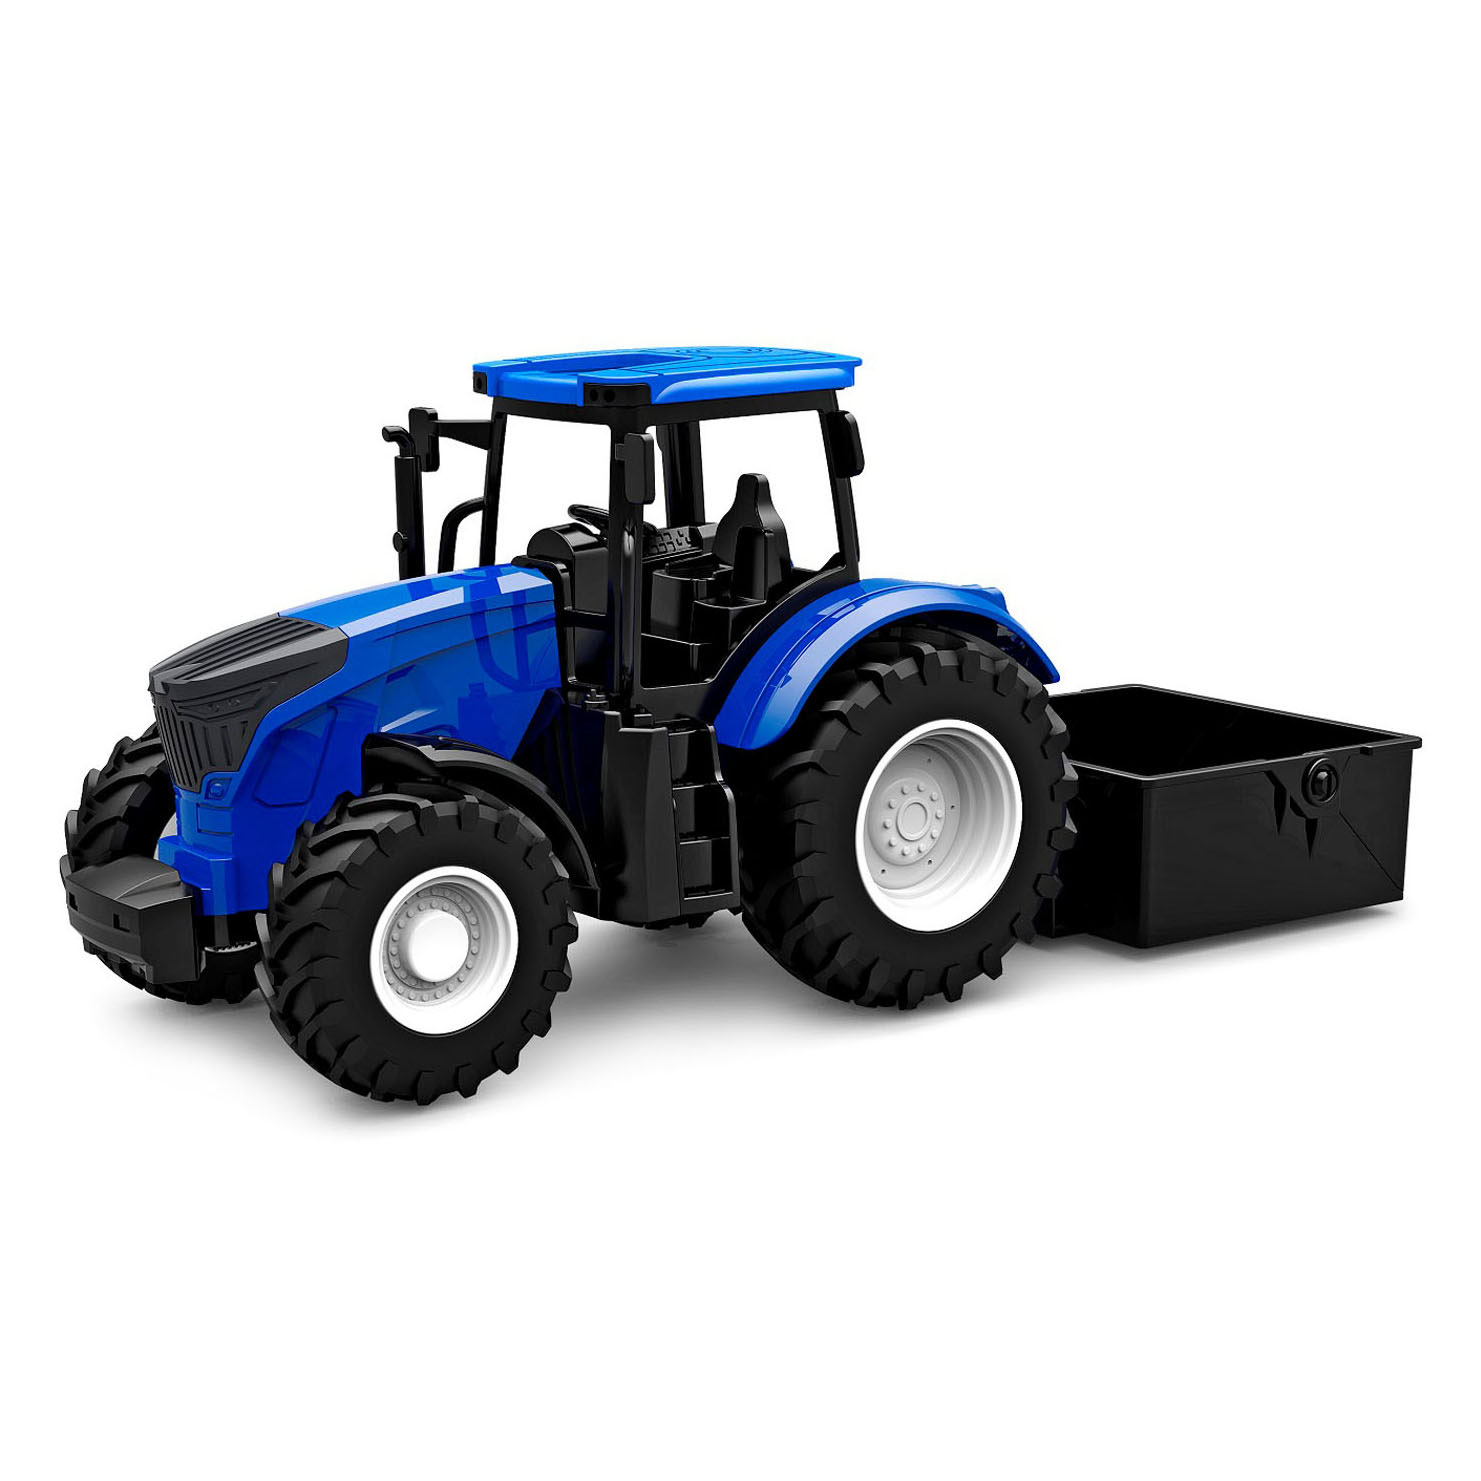 Voorwaardelijk Verspreiding Begraafplaats Kids Globe Tractor met Kiepbak - Blauw online ... | Lobbes Speelgoed